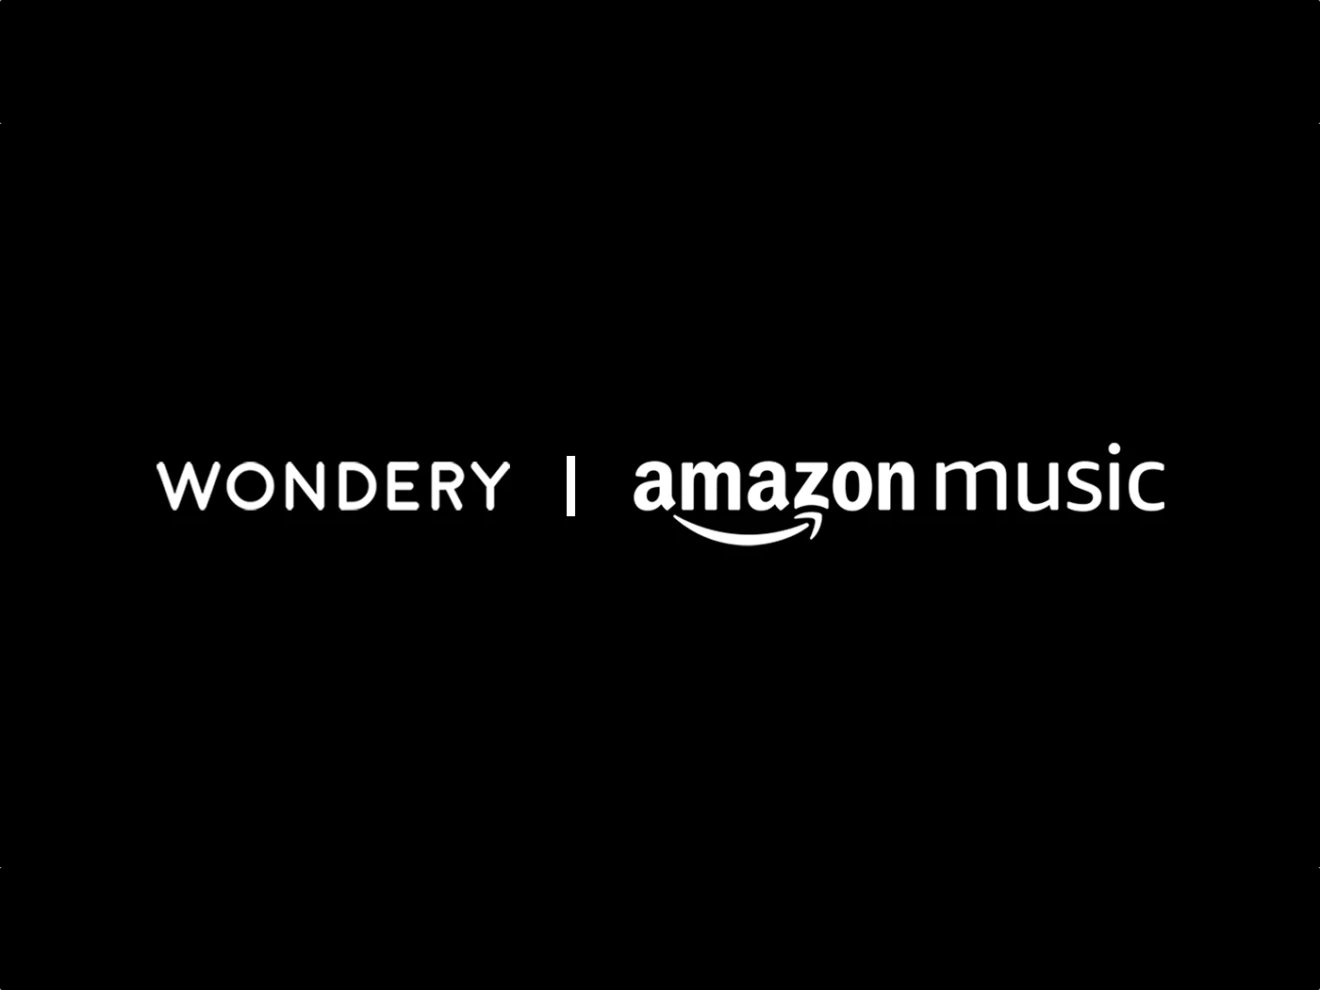 Amazon Wondery